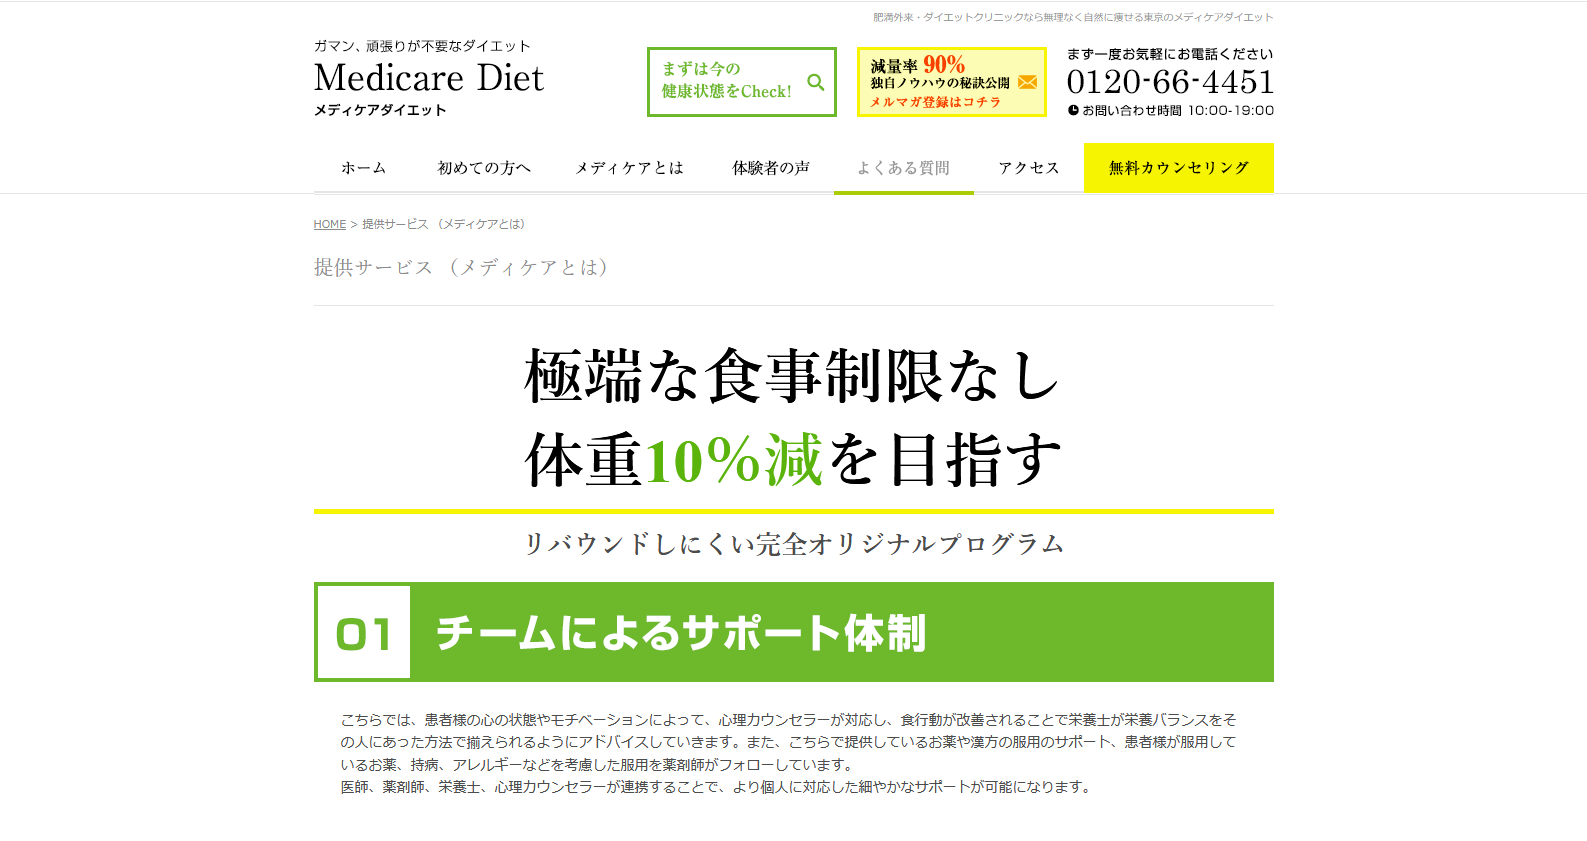 提供サービス （メディケアとは） - 肥満外来で健康的に痩せる｜ダイエットならメディケアダイエット 東京